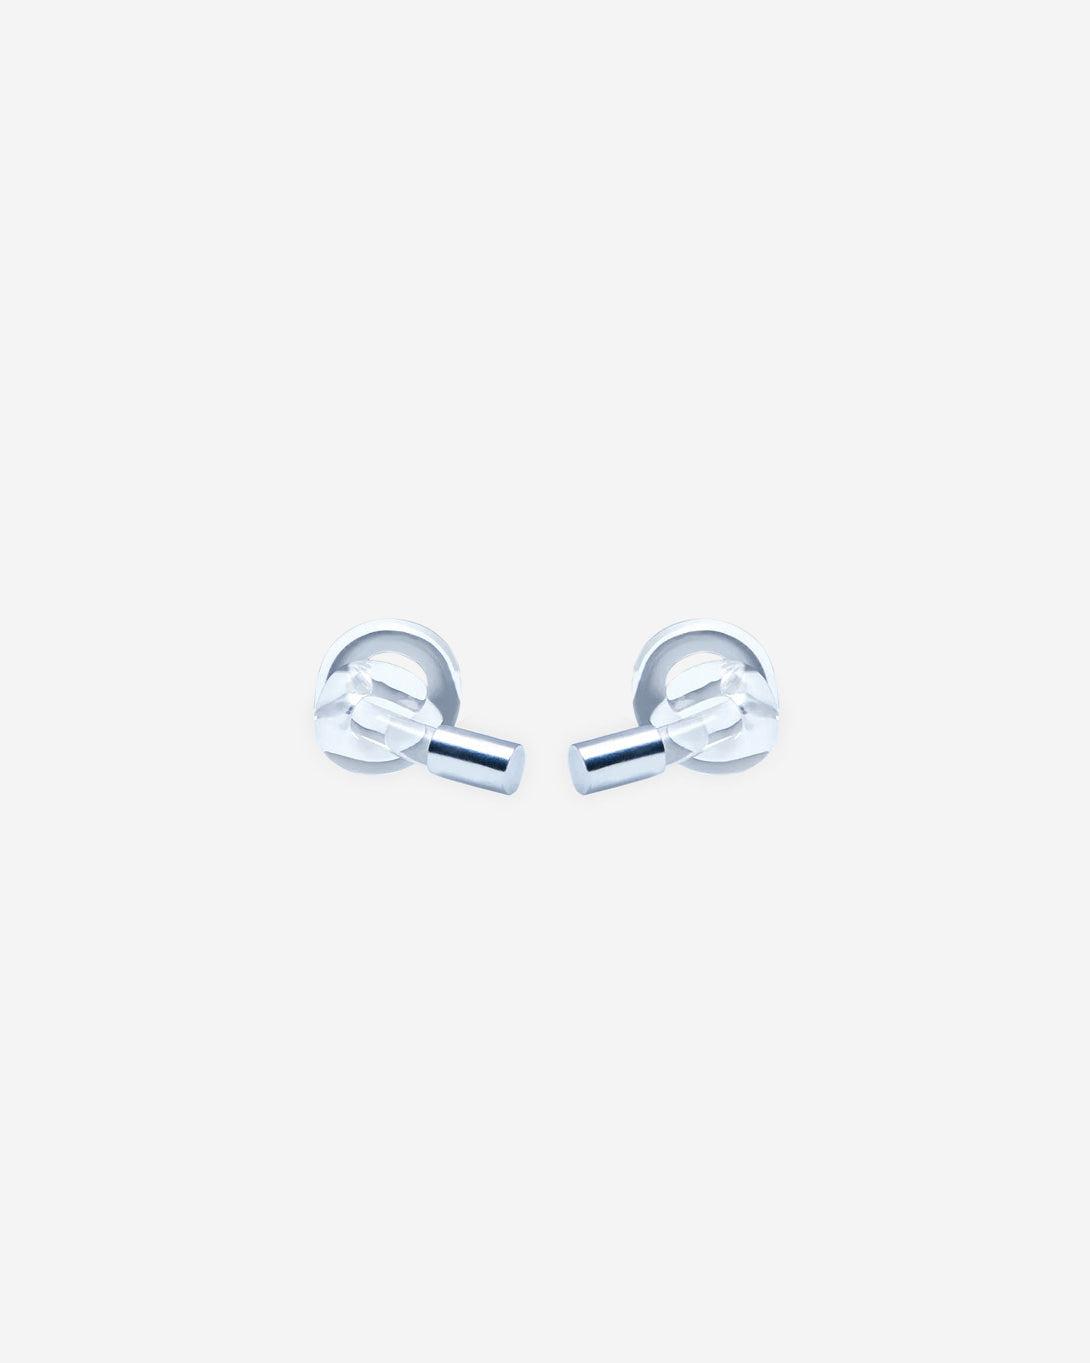 Mini Knot Earrings - Jewelry - Milko Boyarov - Elevastor